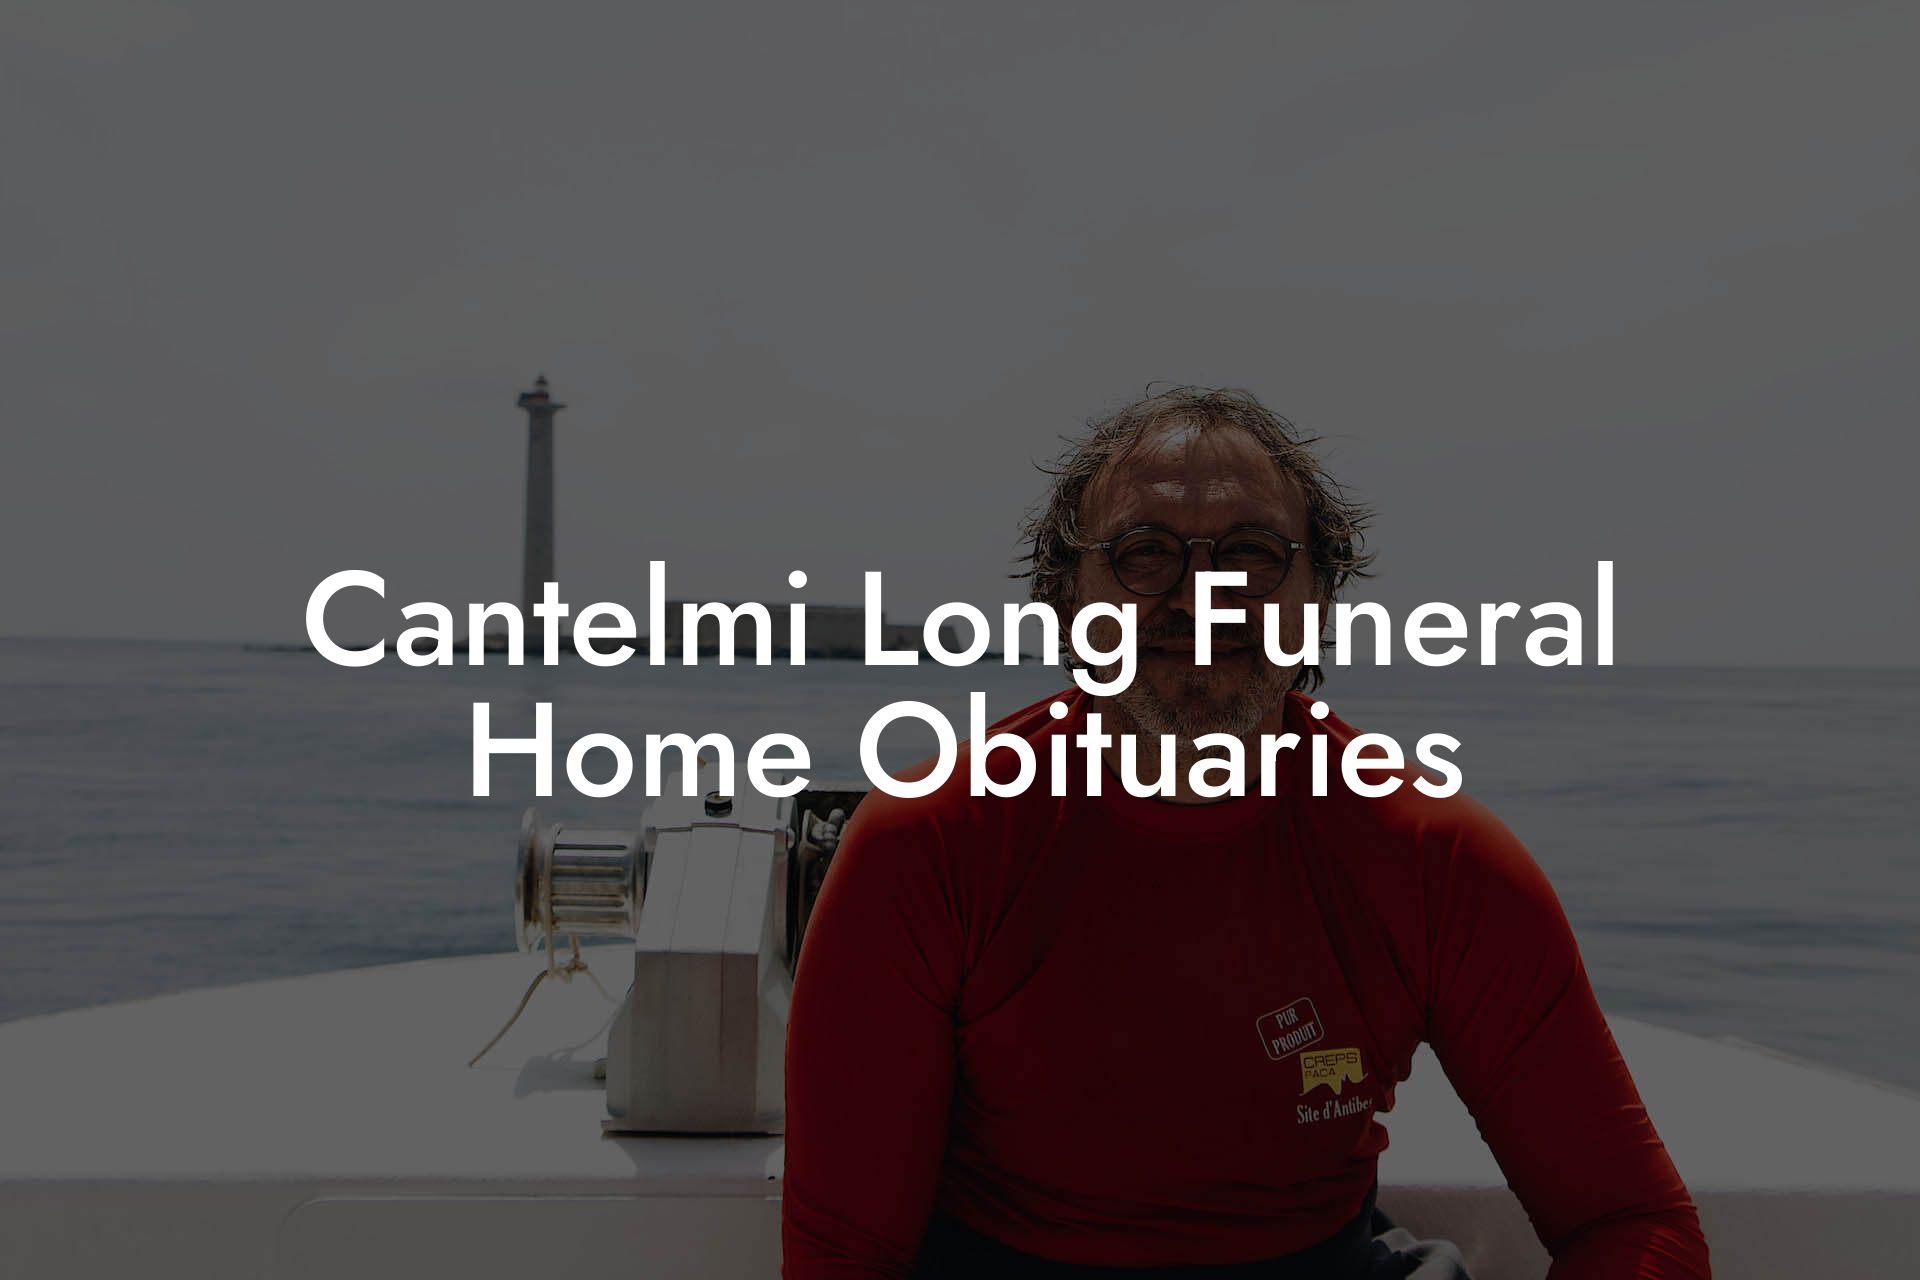 Cantelmi Long Funeral Home Obituaries